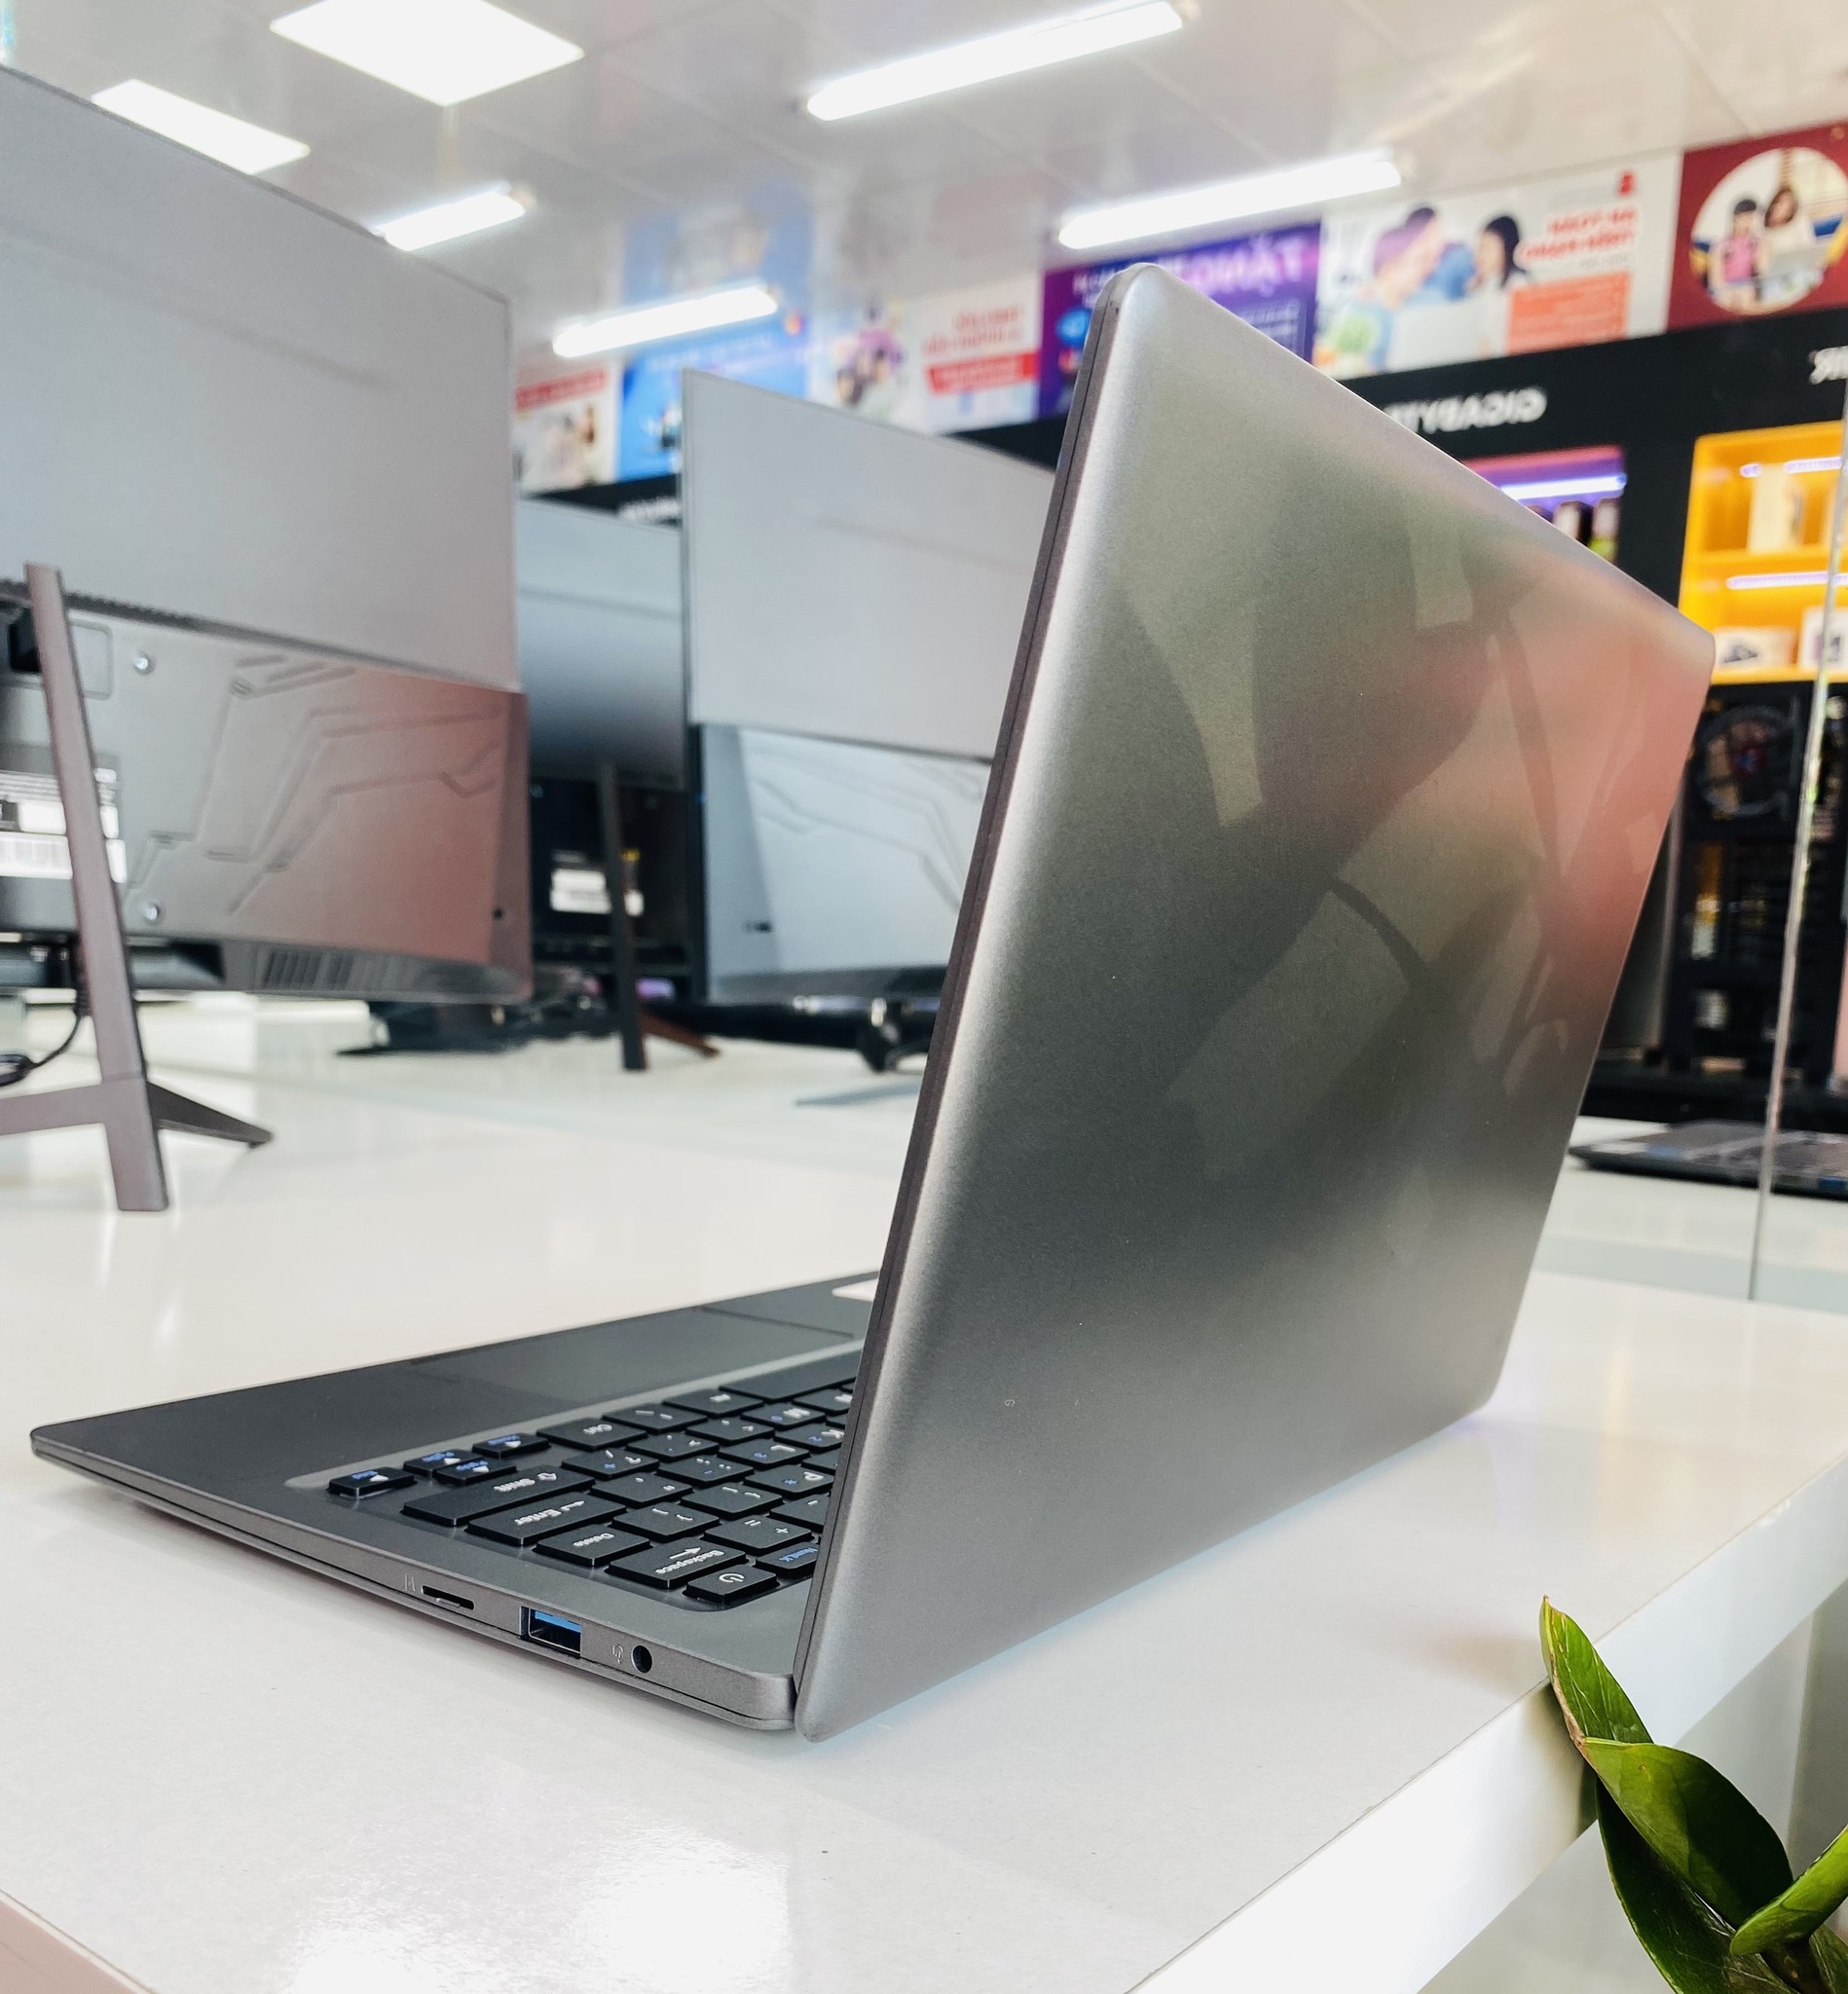 Trên thị trường có những dòng laptop Dell nào?